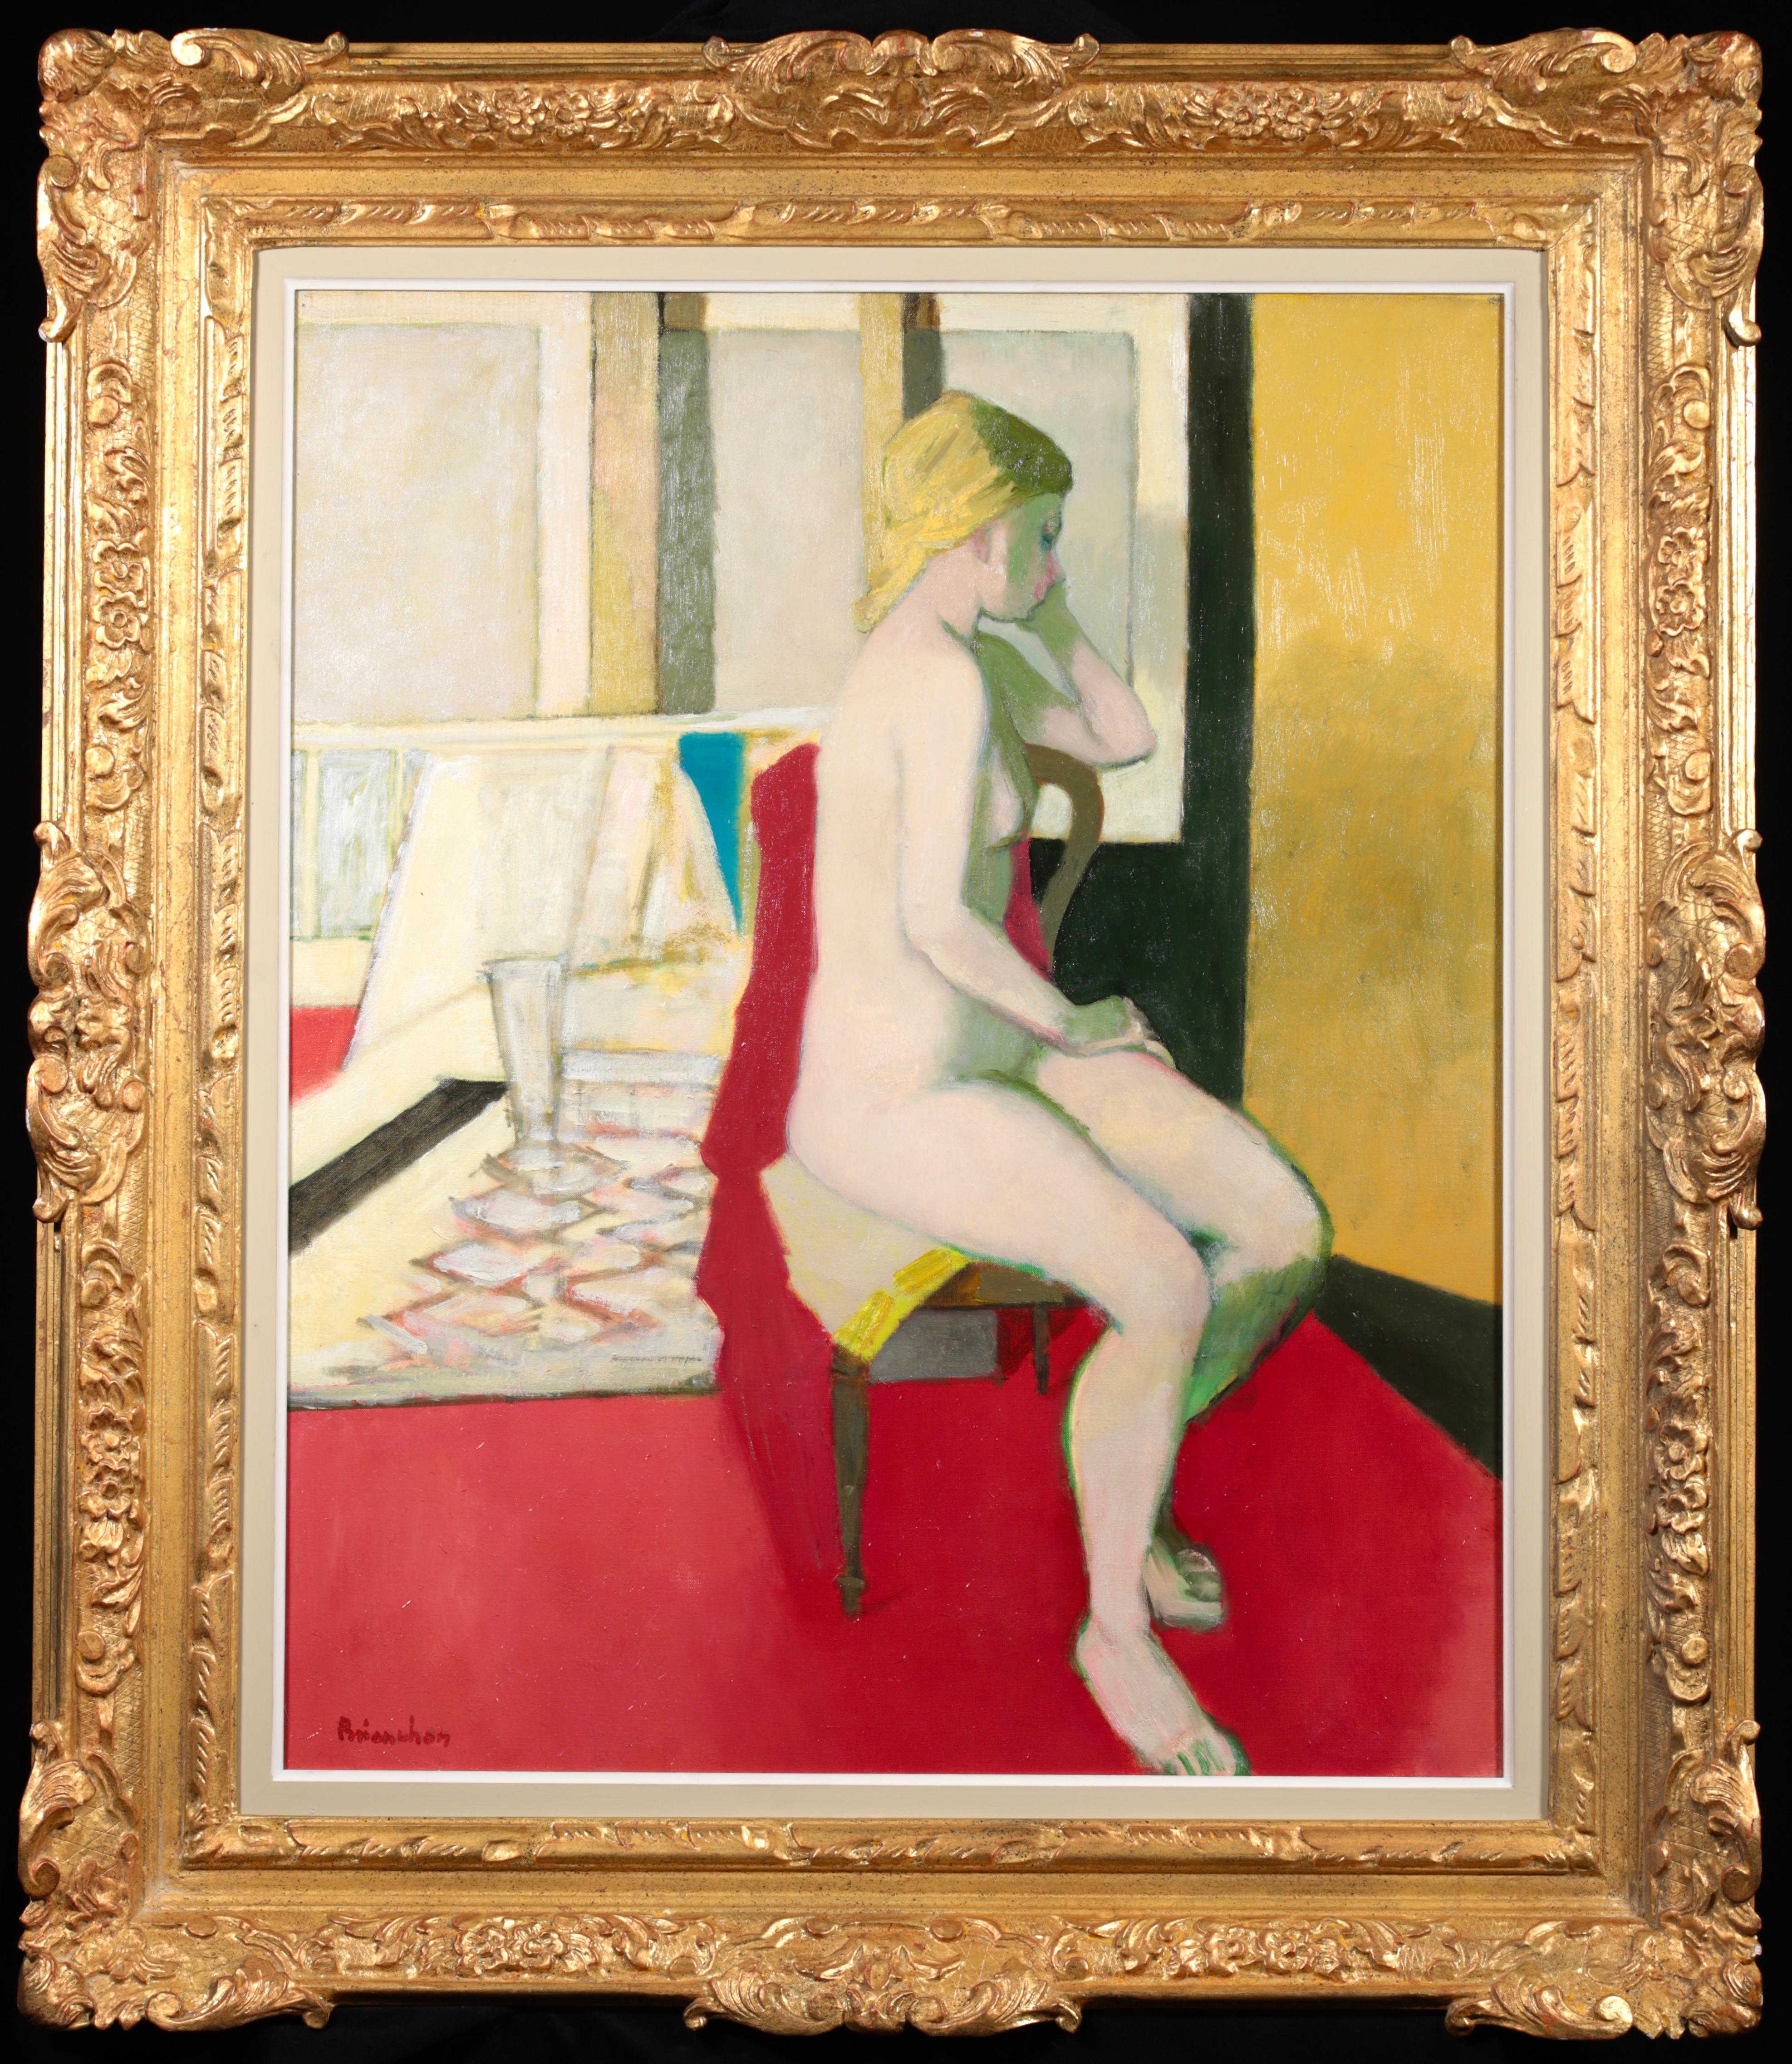 Merveilleuse huile sur toile vers 1960 du peintre moderniste français Maurice Brianchon. L'œuvre représente un nu aux cheveux blonds assis sur une chaise en bois, détourné de l'artiste, le menton posé dans sa main. 

Signature :
Signé en bas à